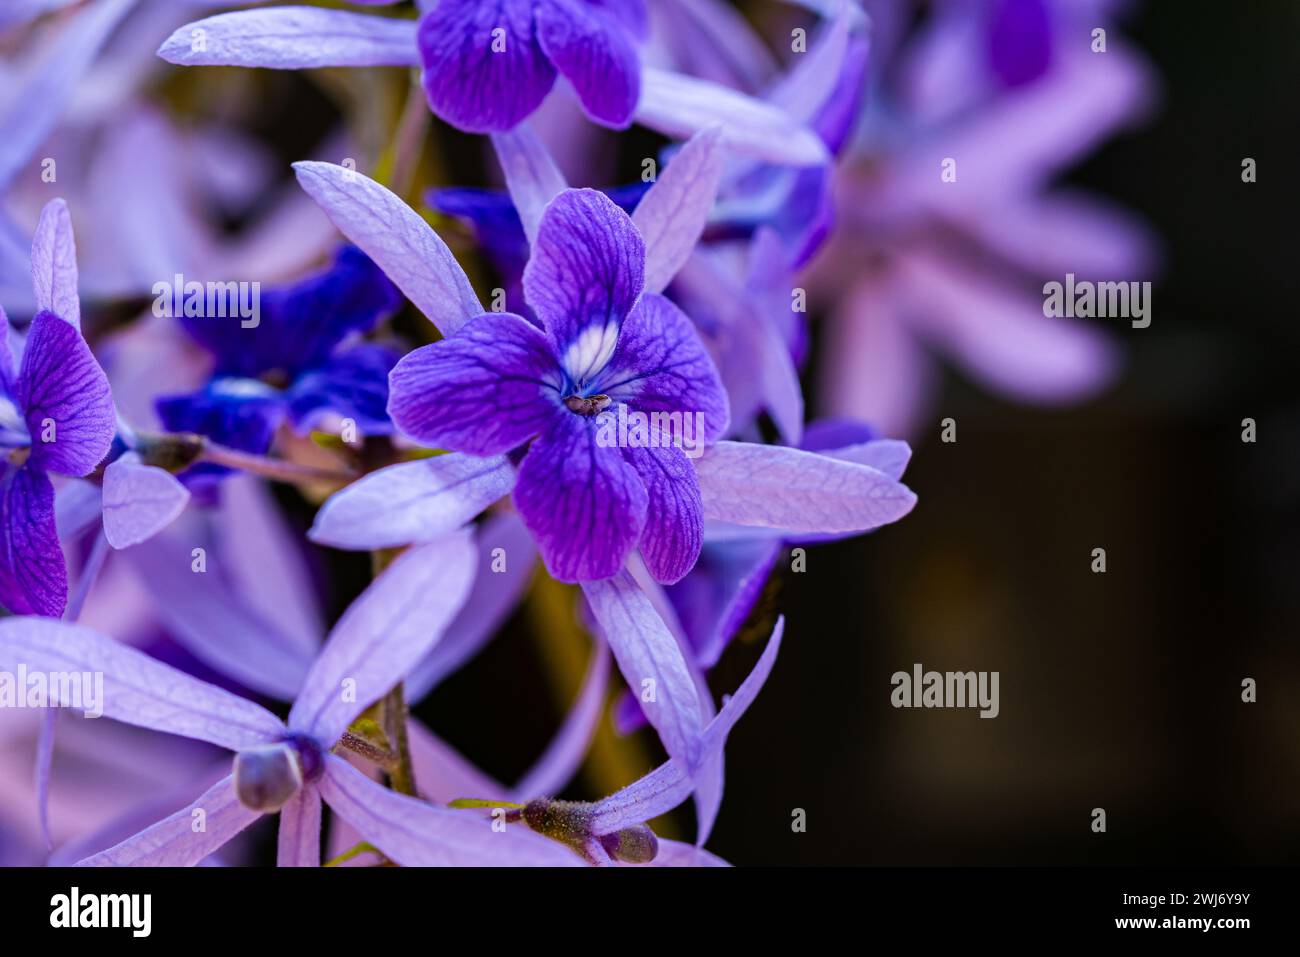 Extremer Nahaufnahme selektiver Fokus von blühenden violetten Kranzblüten oder Sandpapier-Rebblüten (wissenschaftlicher Name ist Petrea volubilis) auf dunklem Hintergrund. Stockfoto